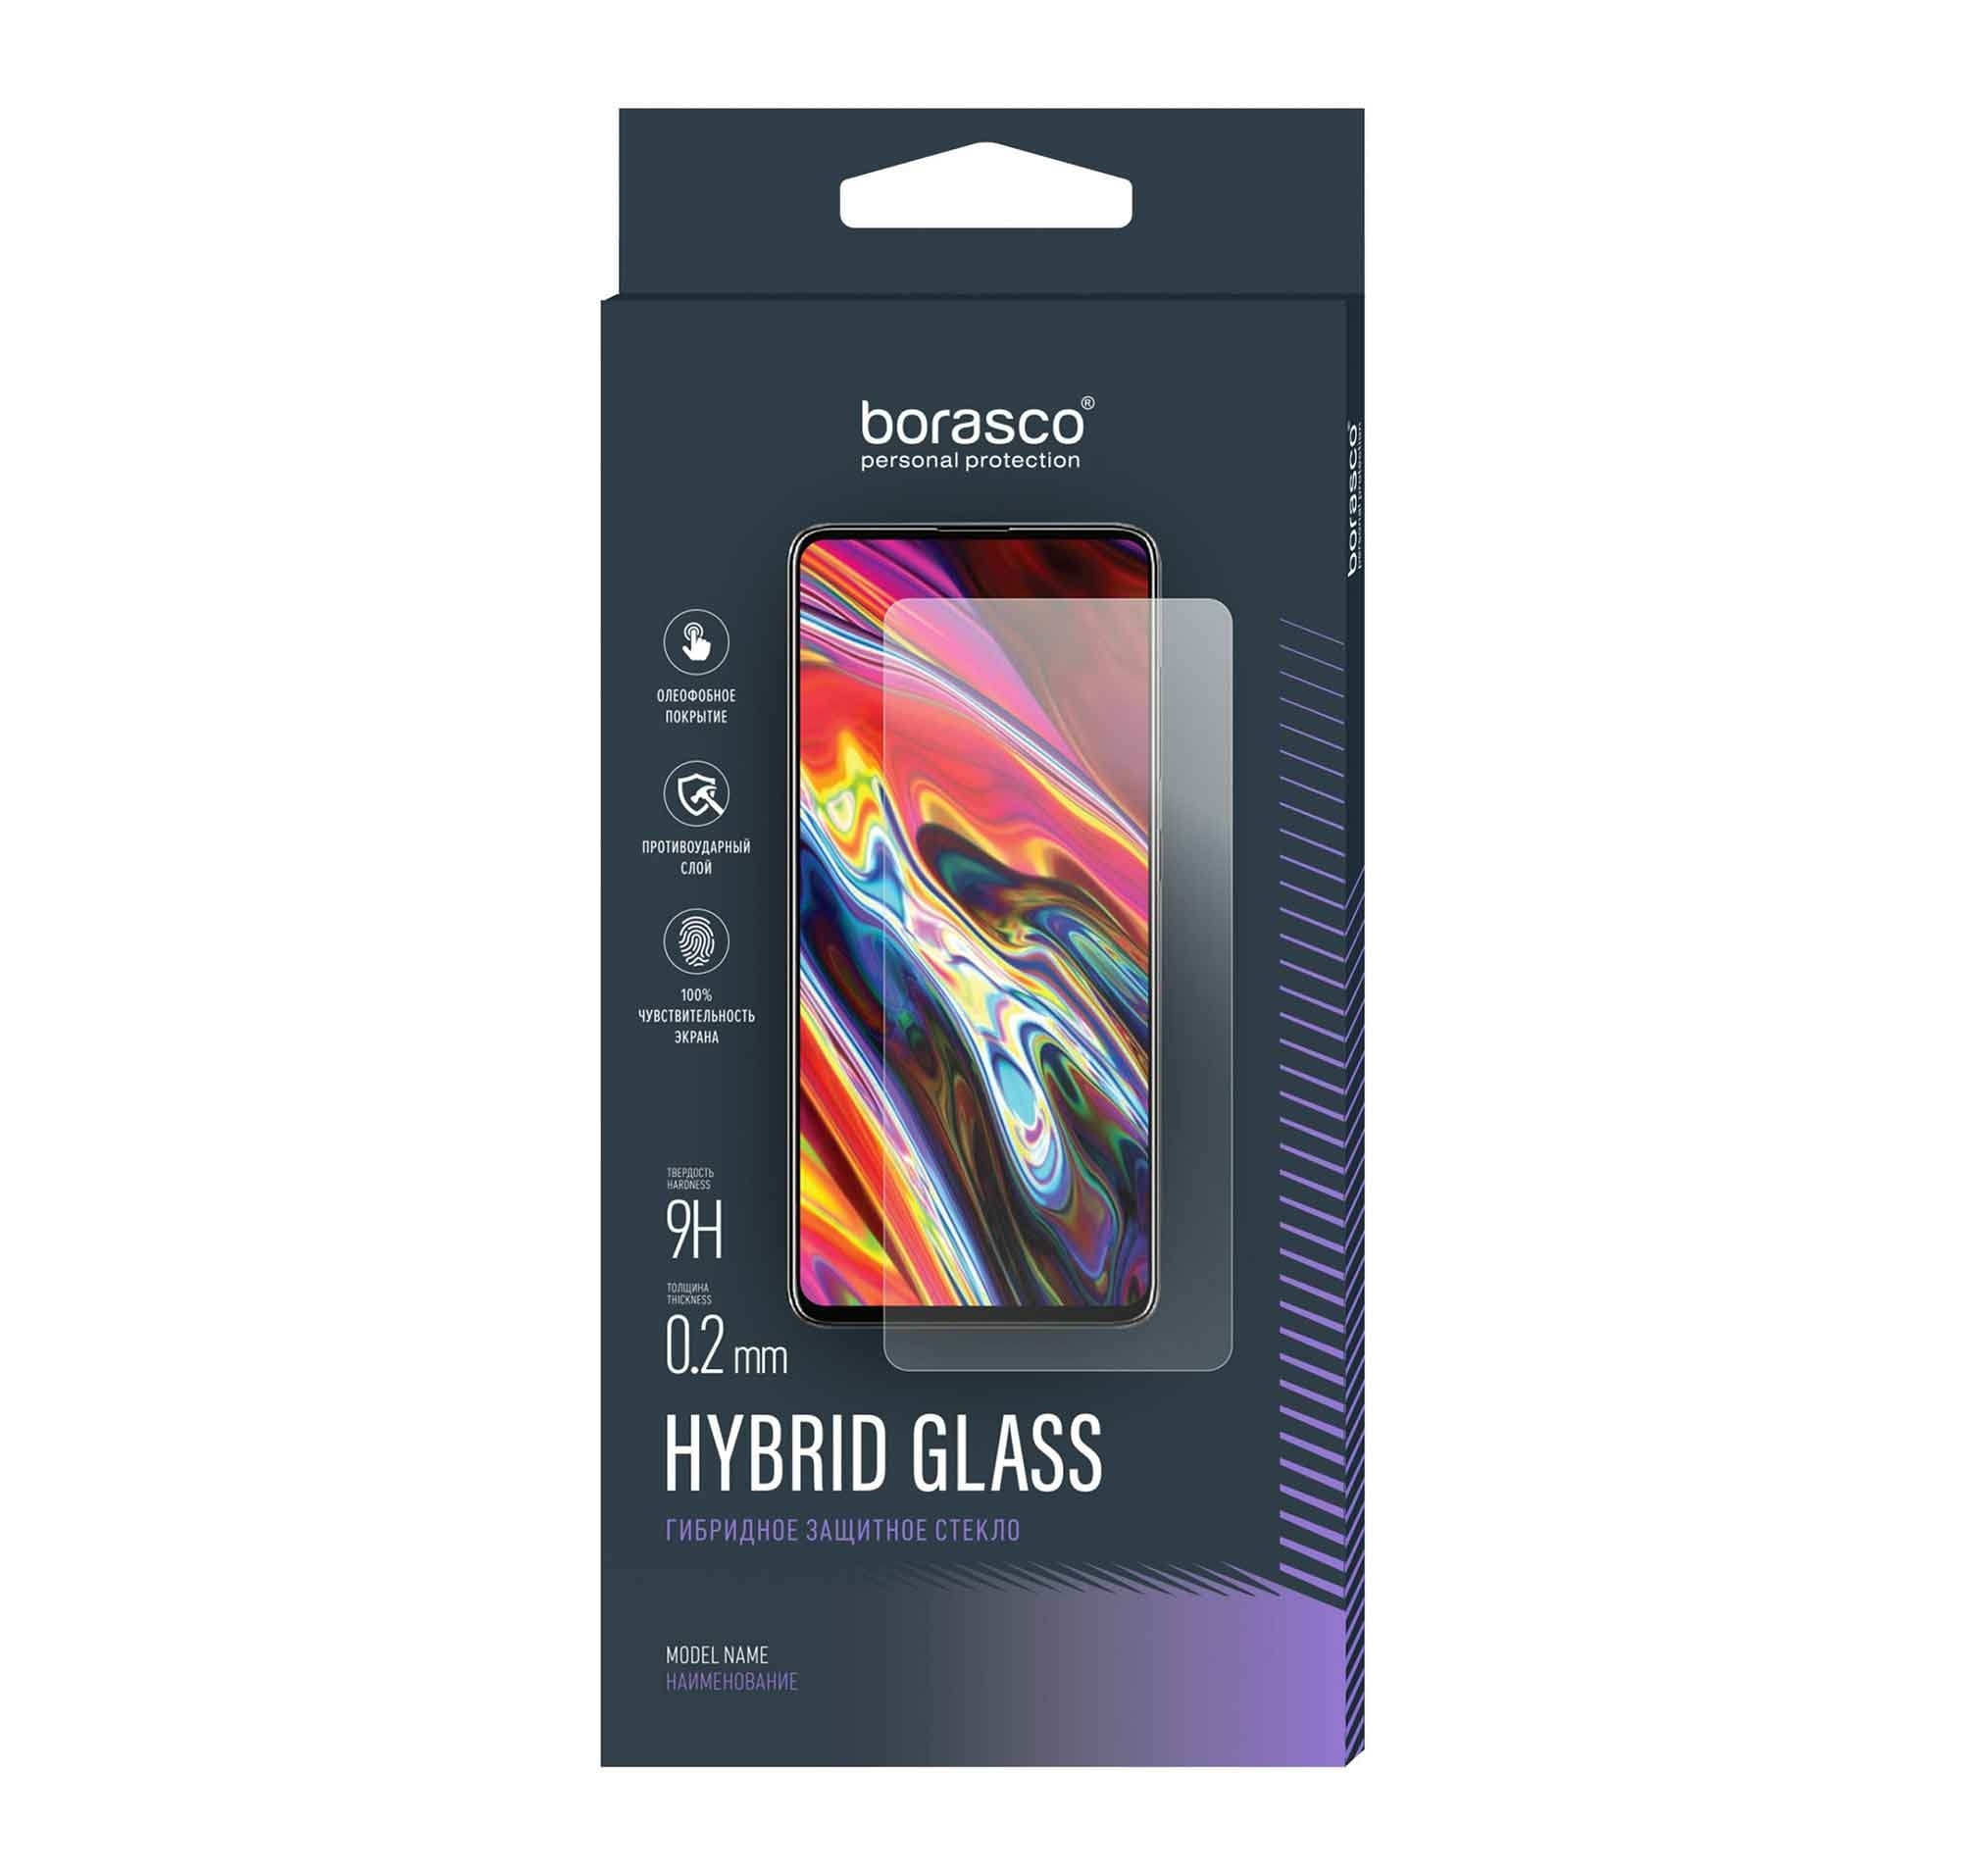 Стекло защитное BoraSCO Hybrid Glass для OnePlus Ace Pro стекло с полным покрытием для oneplus ace pro защита экрана oneplus ace pro закаленное стекло защитная пленка для объектива телефона oneplus ace pro